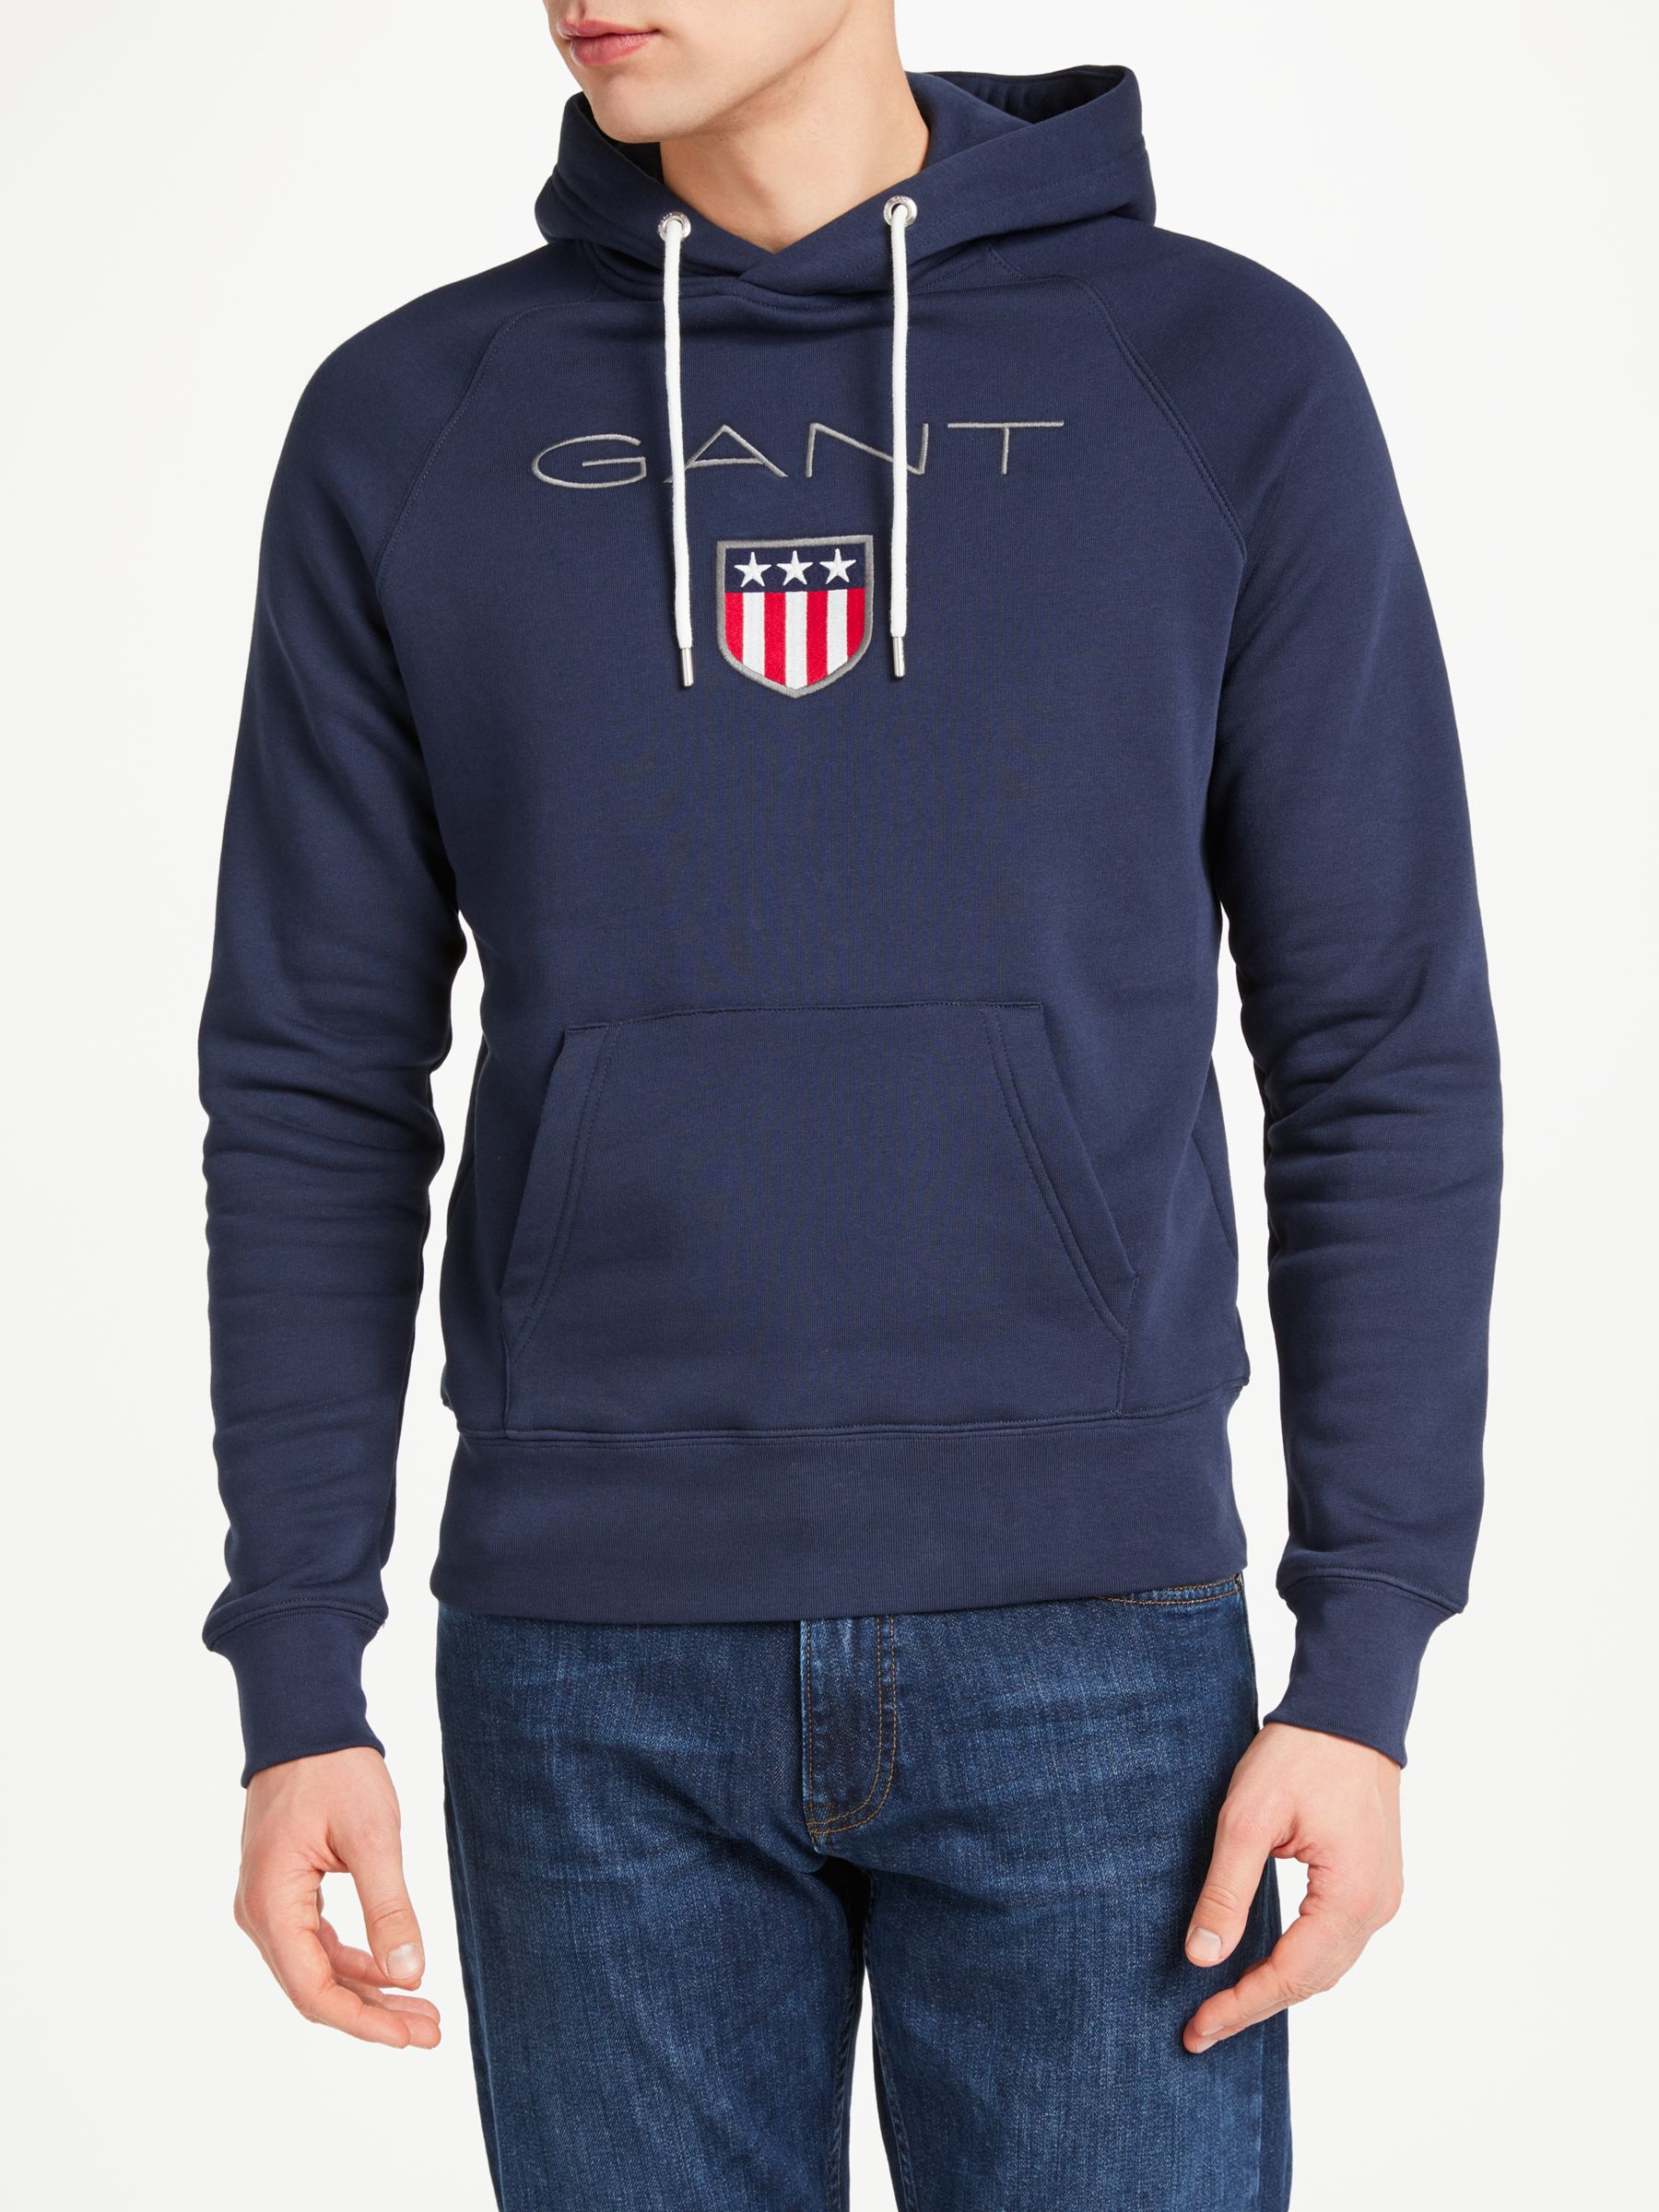 GANT Shield Embroidered Pullover Sweatshirt, Navy, XXXL